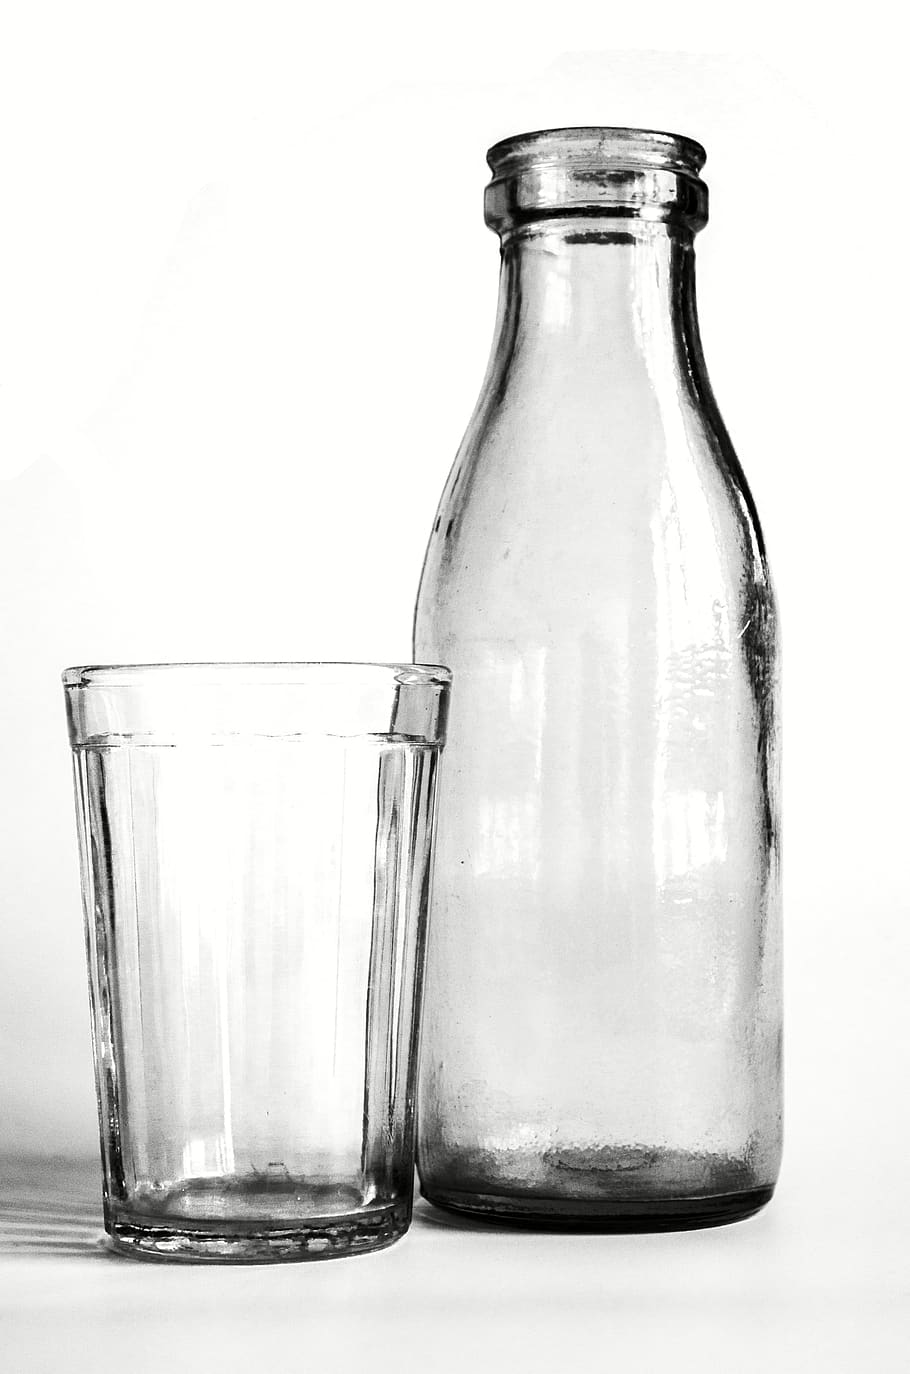 vidro, garrafa, preto e branco, ainda vida, iogurte, velho, soviético, retrô, garrafas, garrafa de vidro